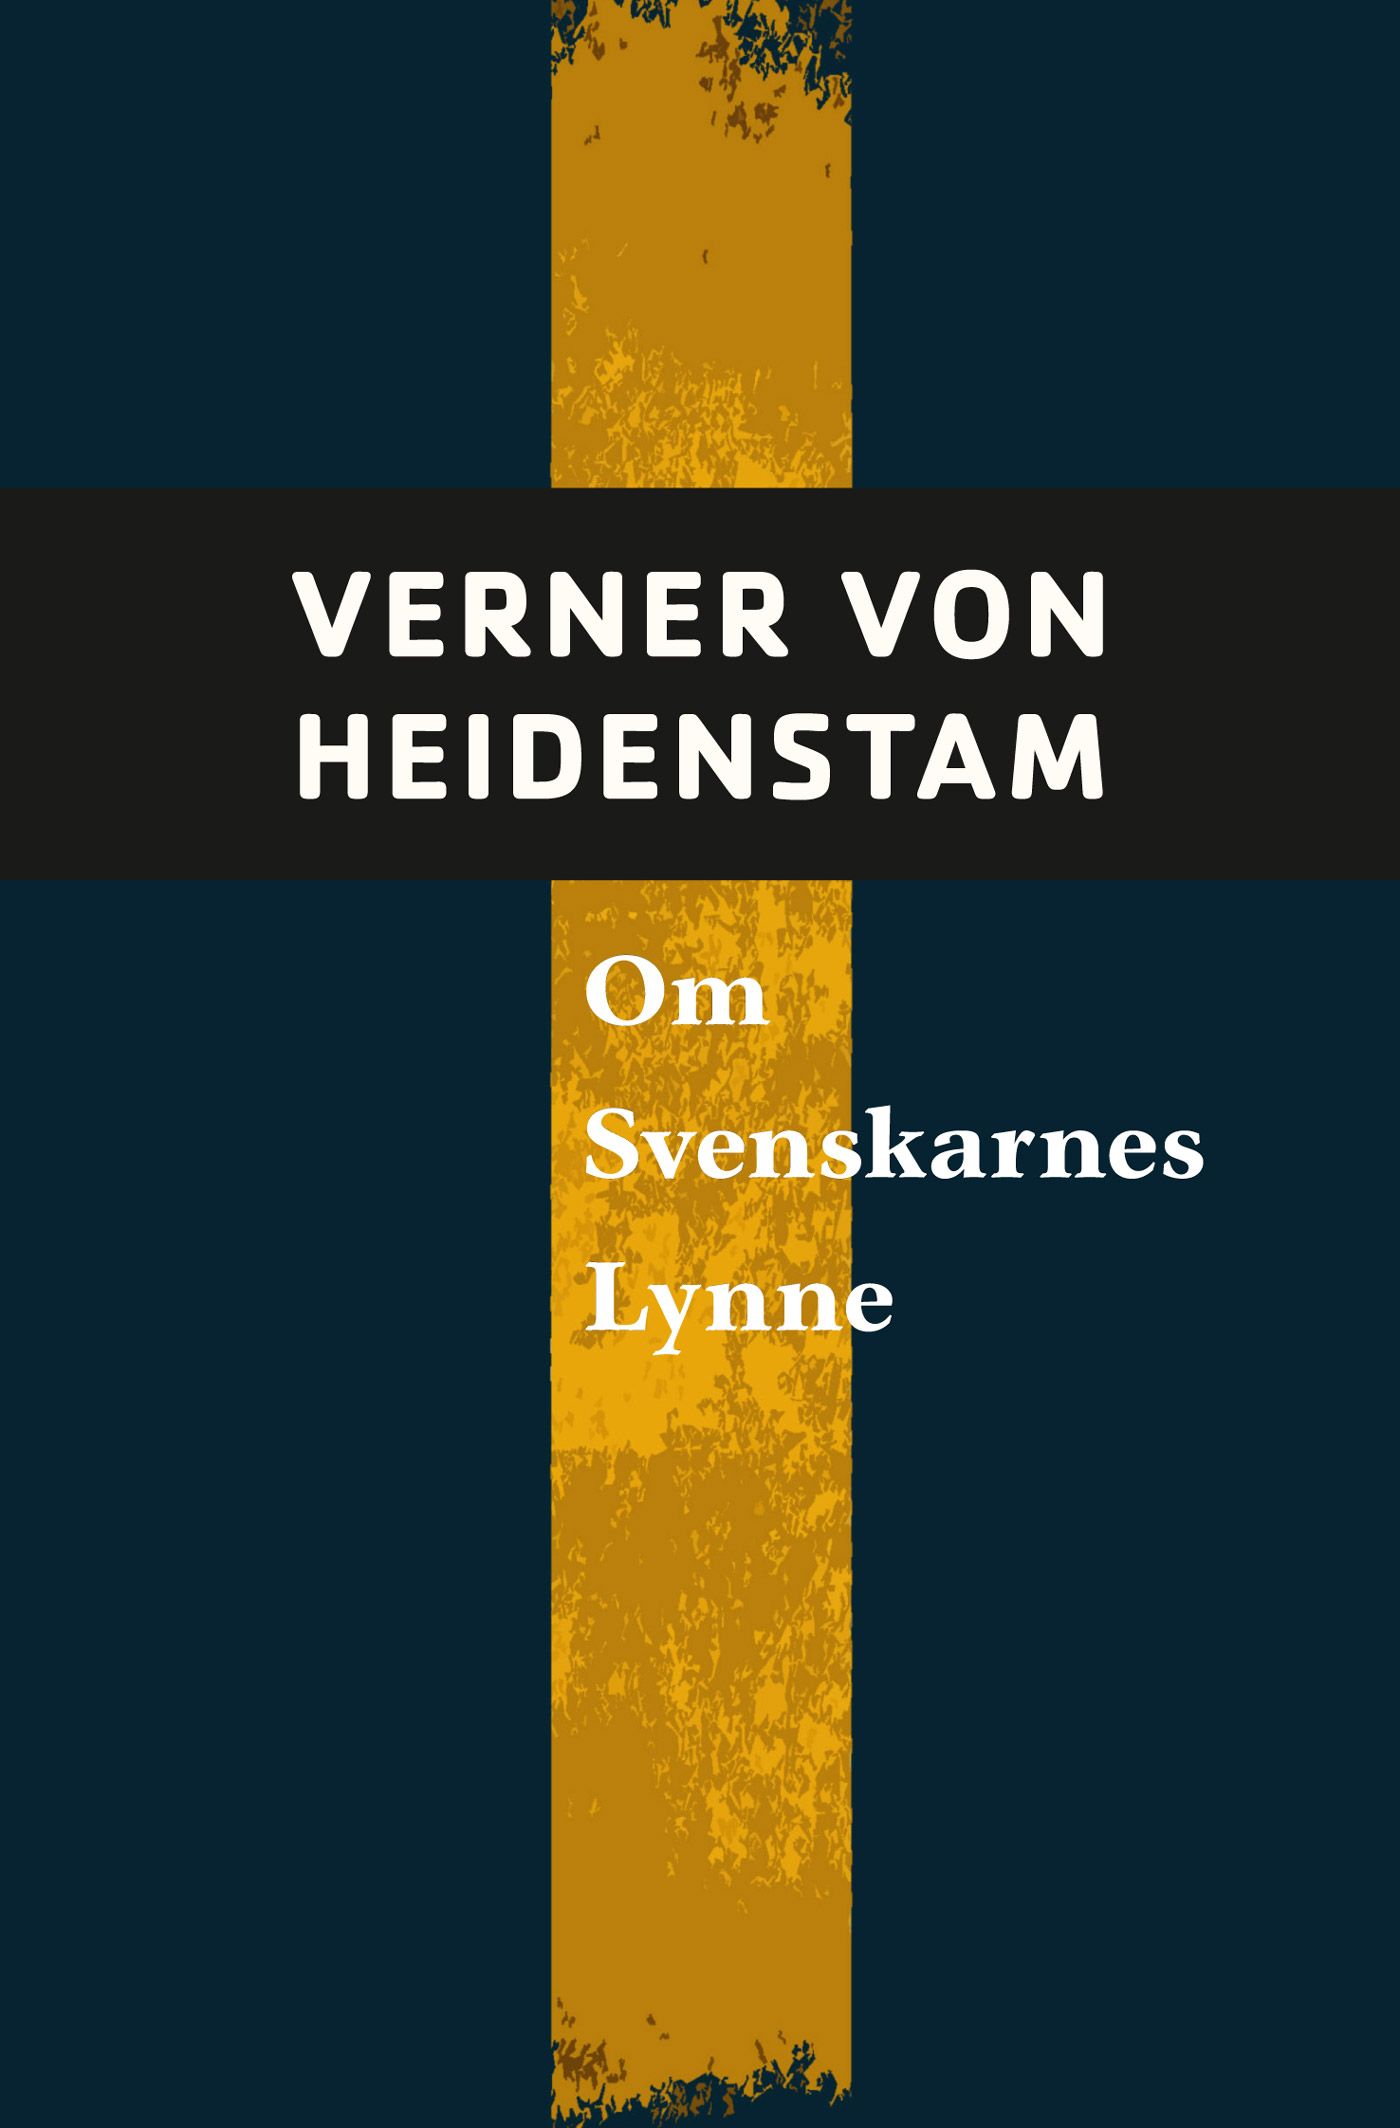 Om svenskarnas lynne, e-bog af Verner von Heidenstam